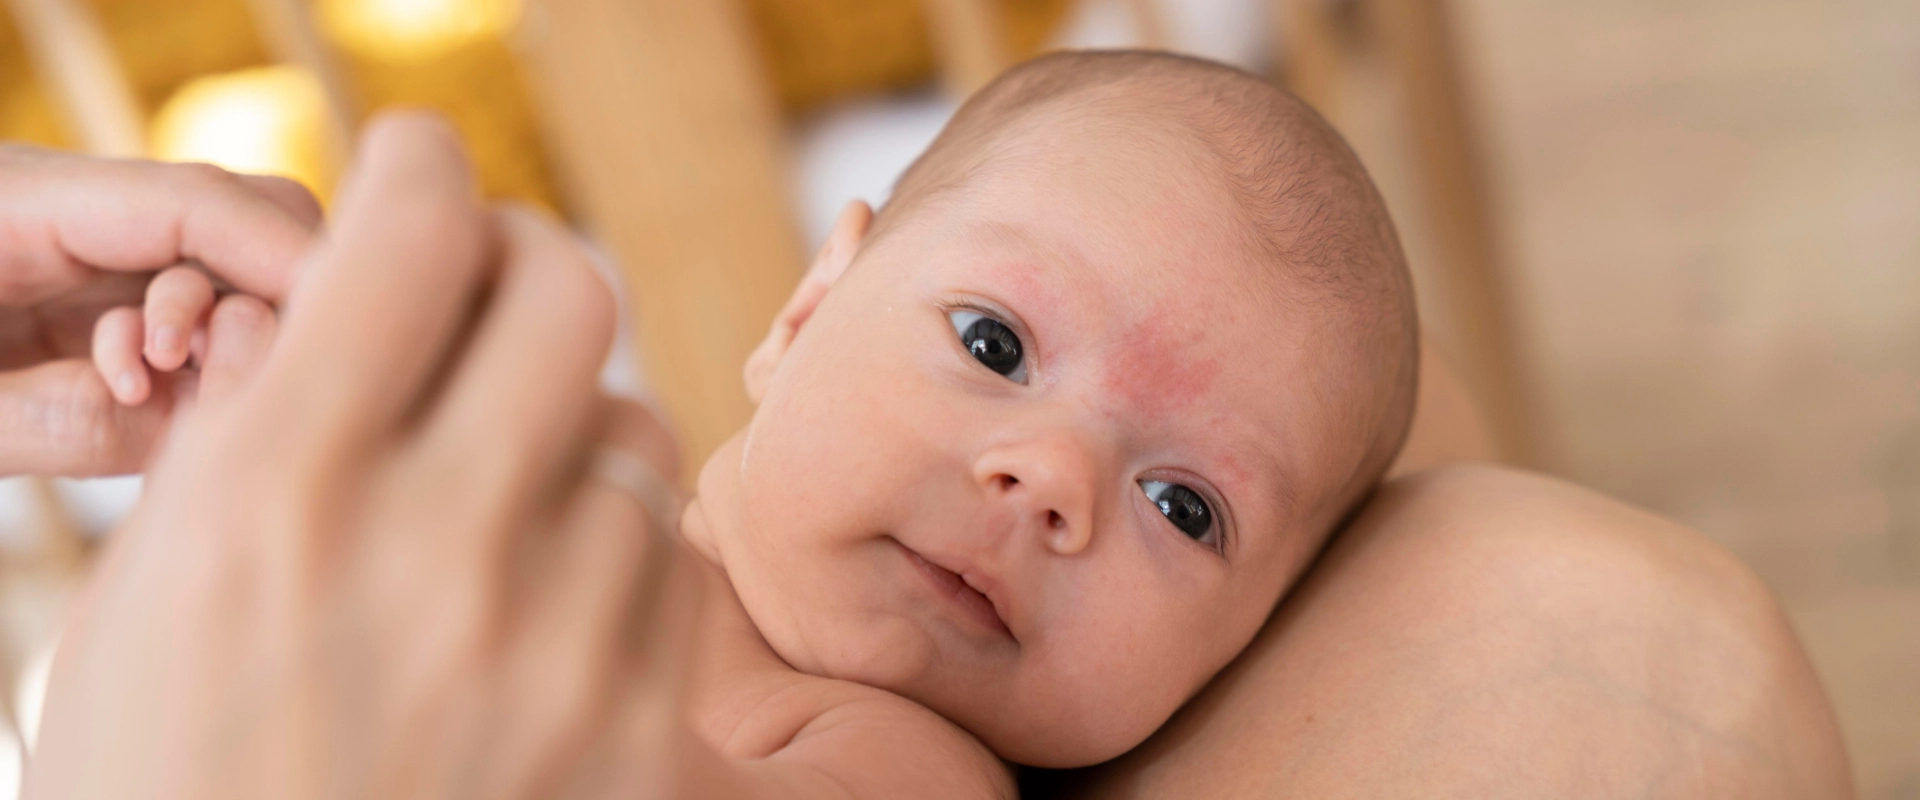 Pelle secca nei neonati: i rimedi per curarla